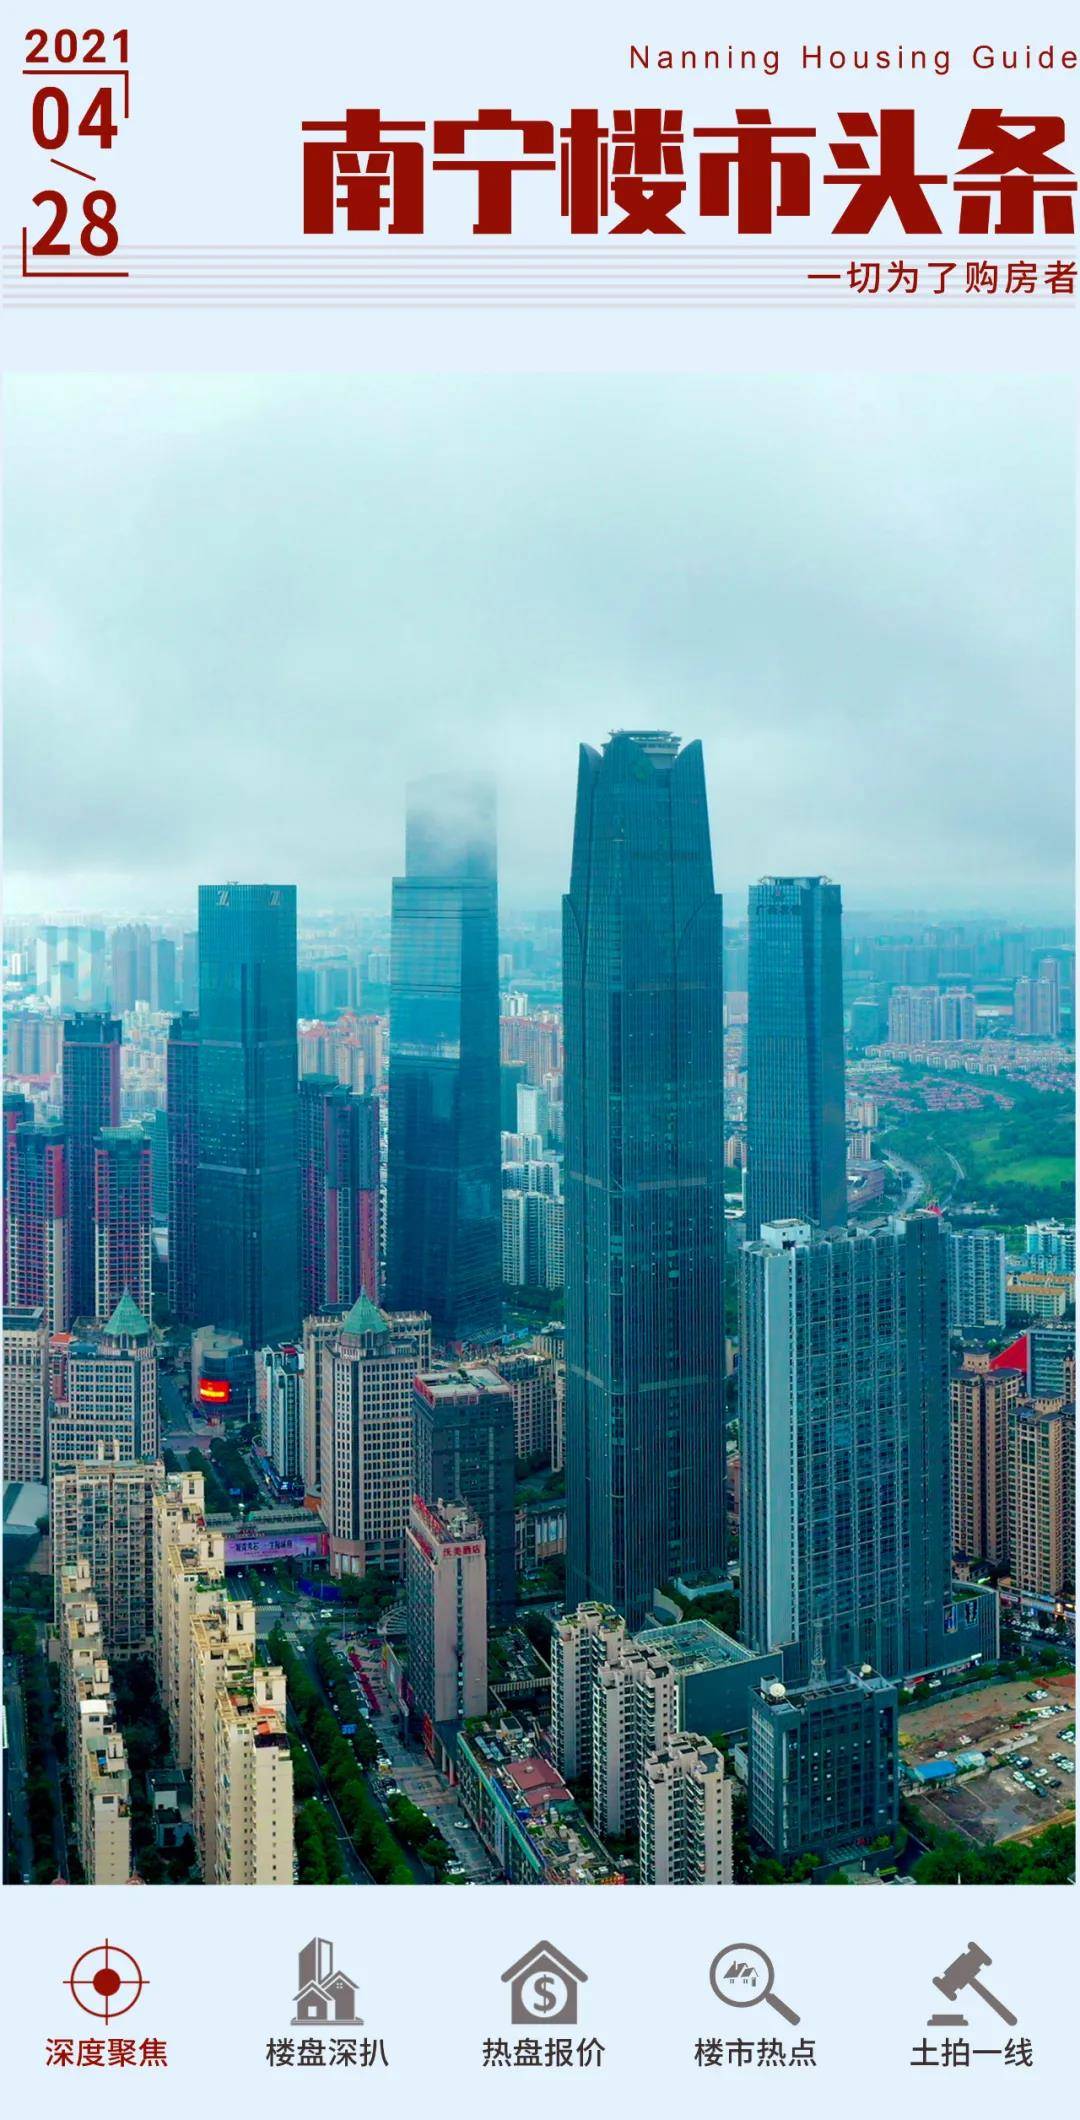 东盟塔建到30层南宁塔高至420米南宁摩天经济愈演愈烈